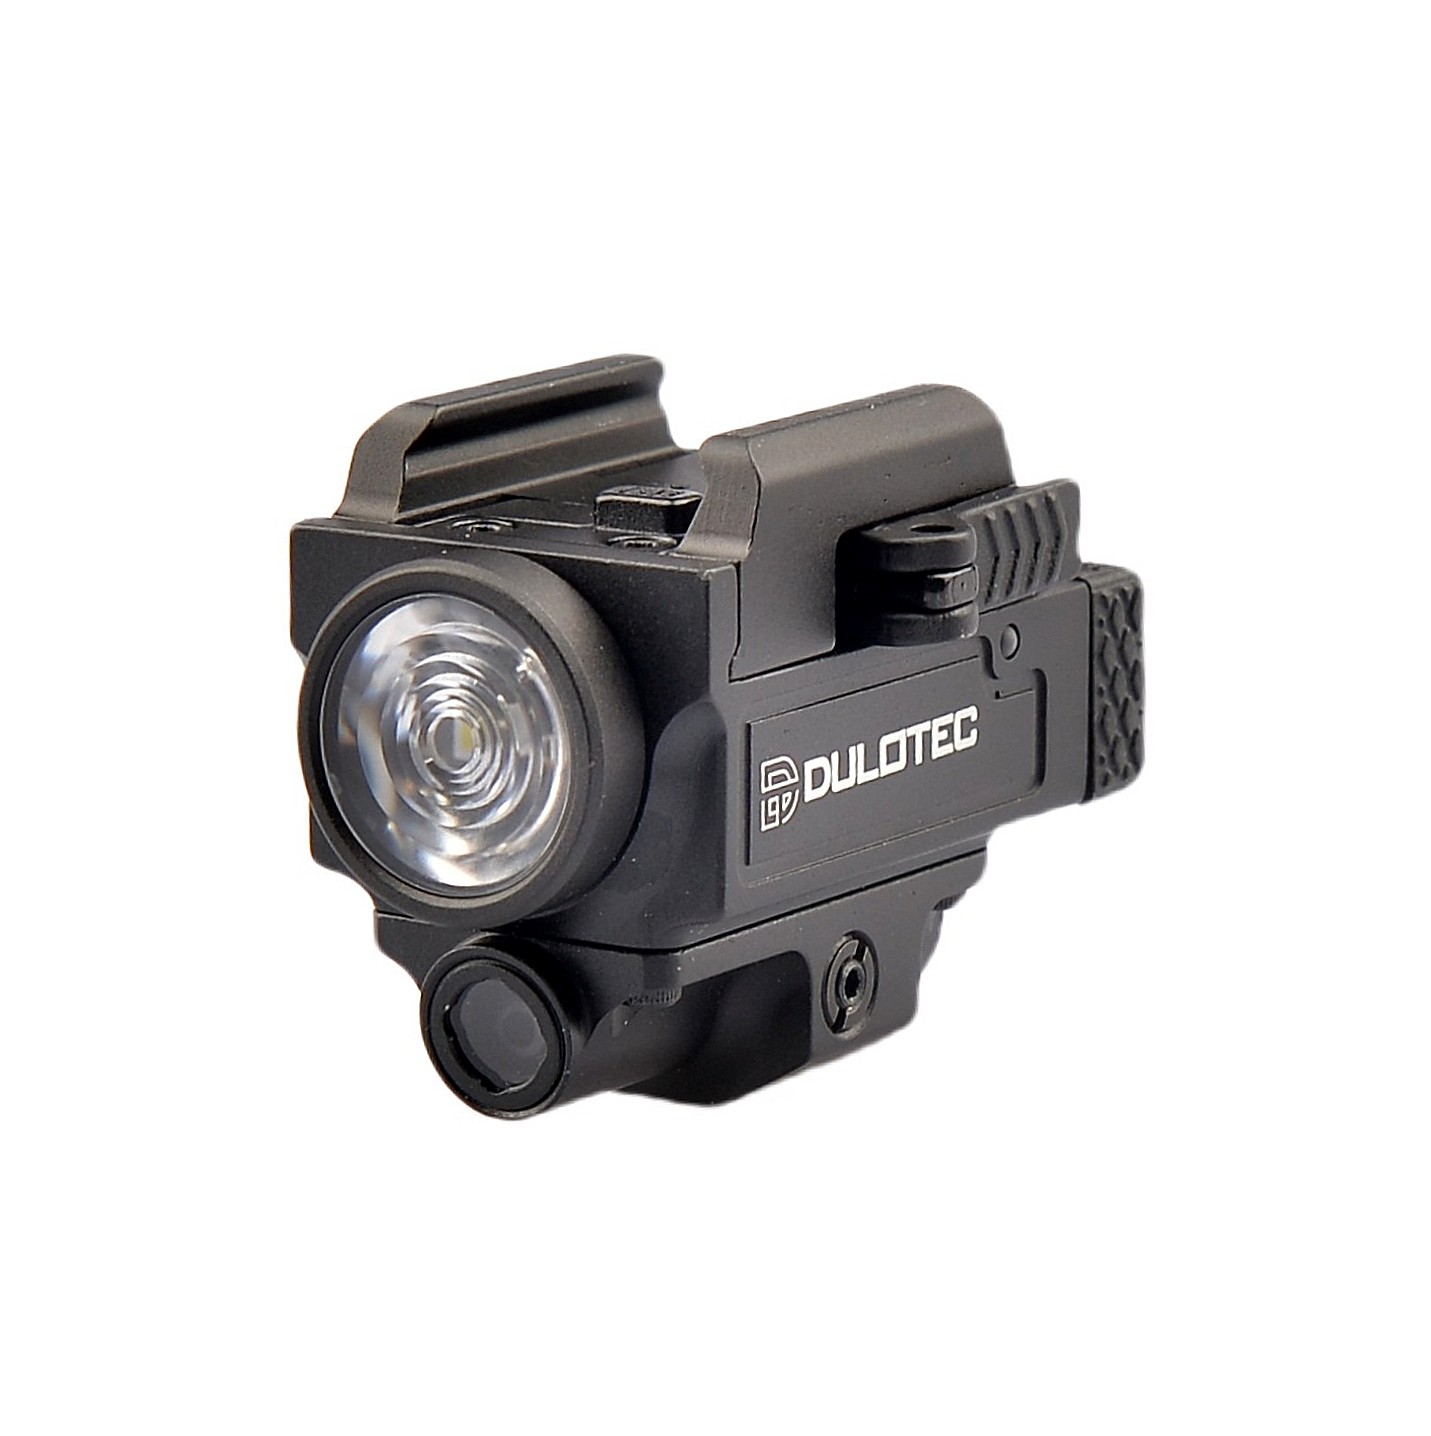 Pistolen-Taschenlampe DULOTEC G4 - Unterziel mit Laserpointer